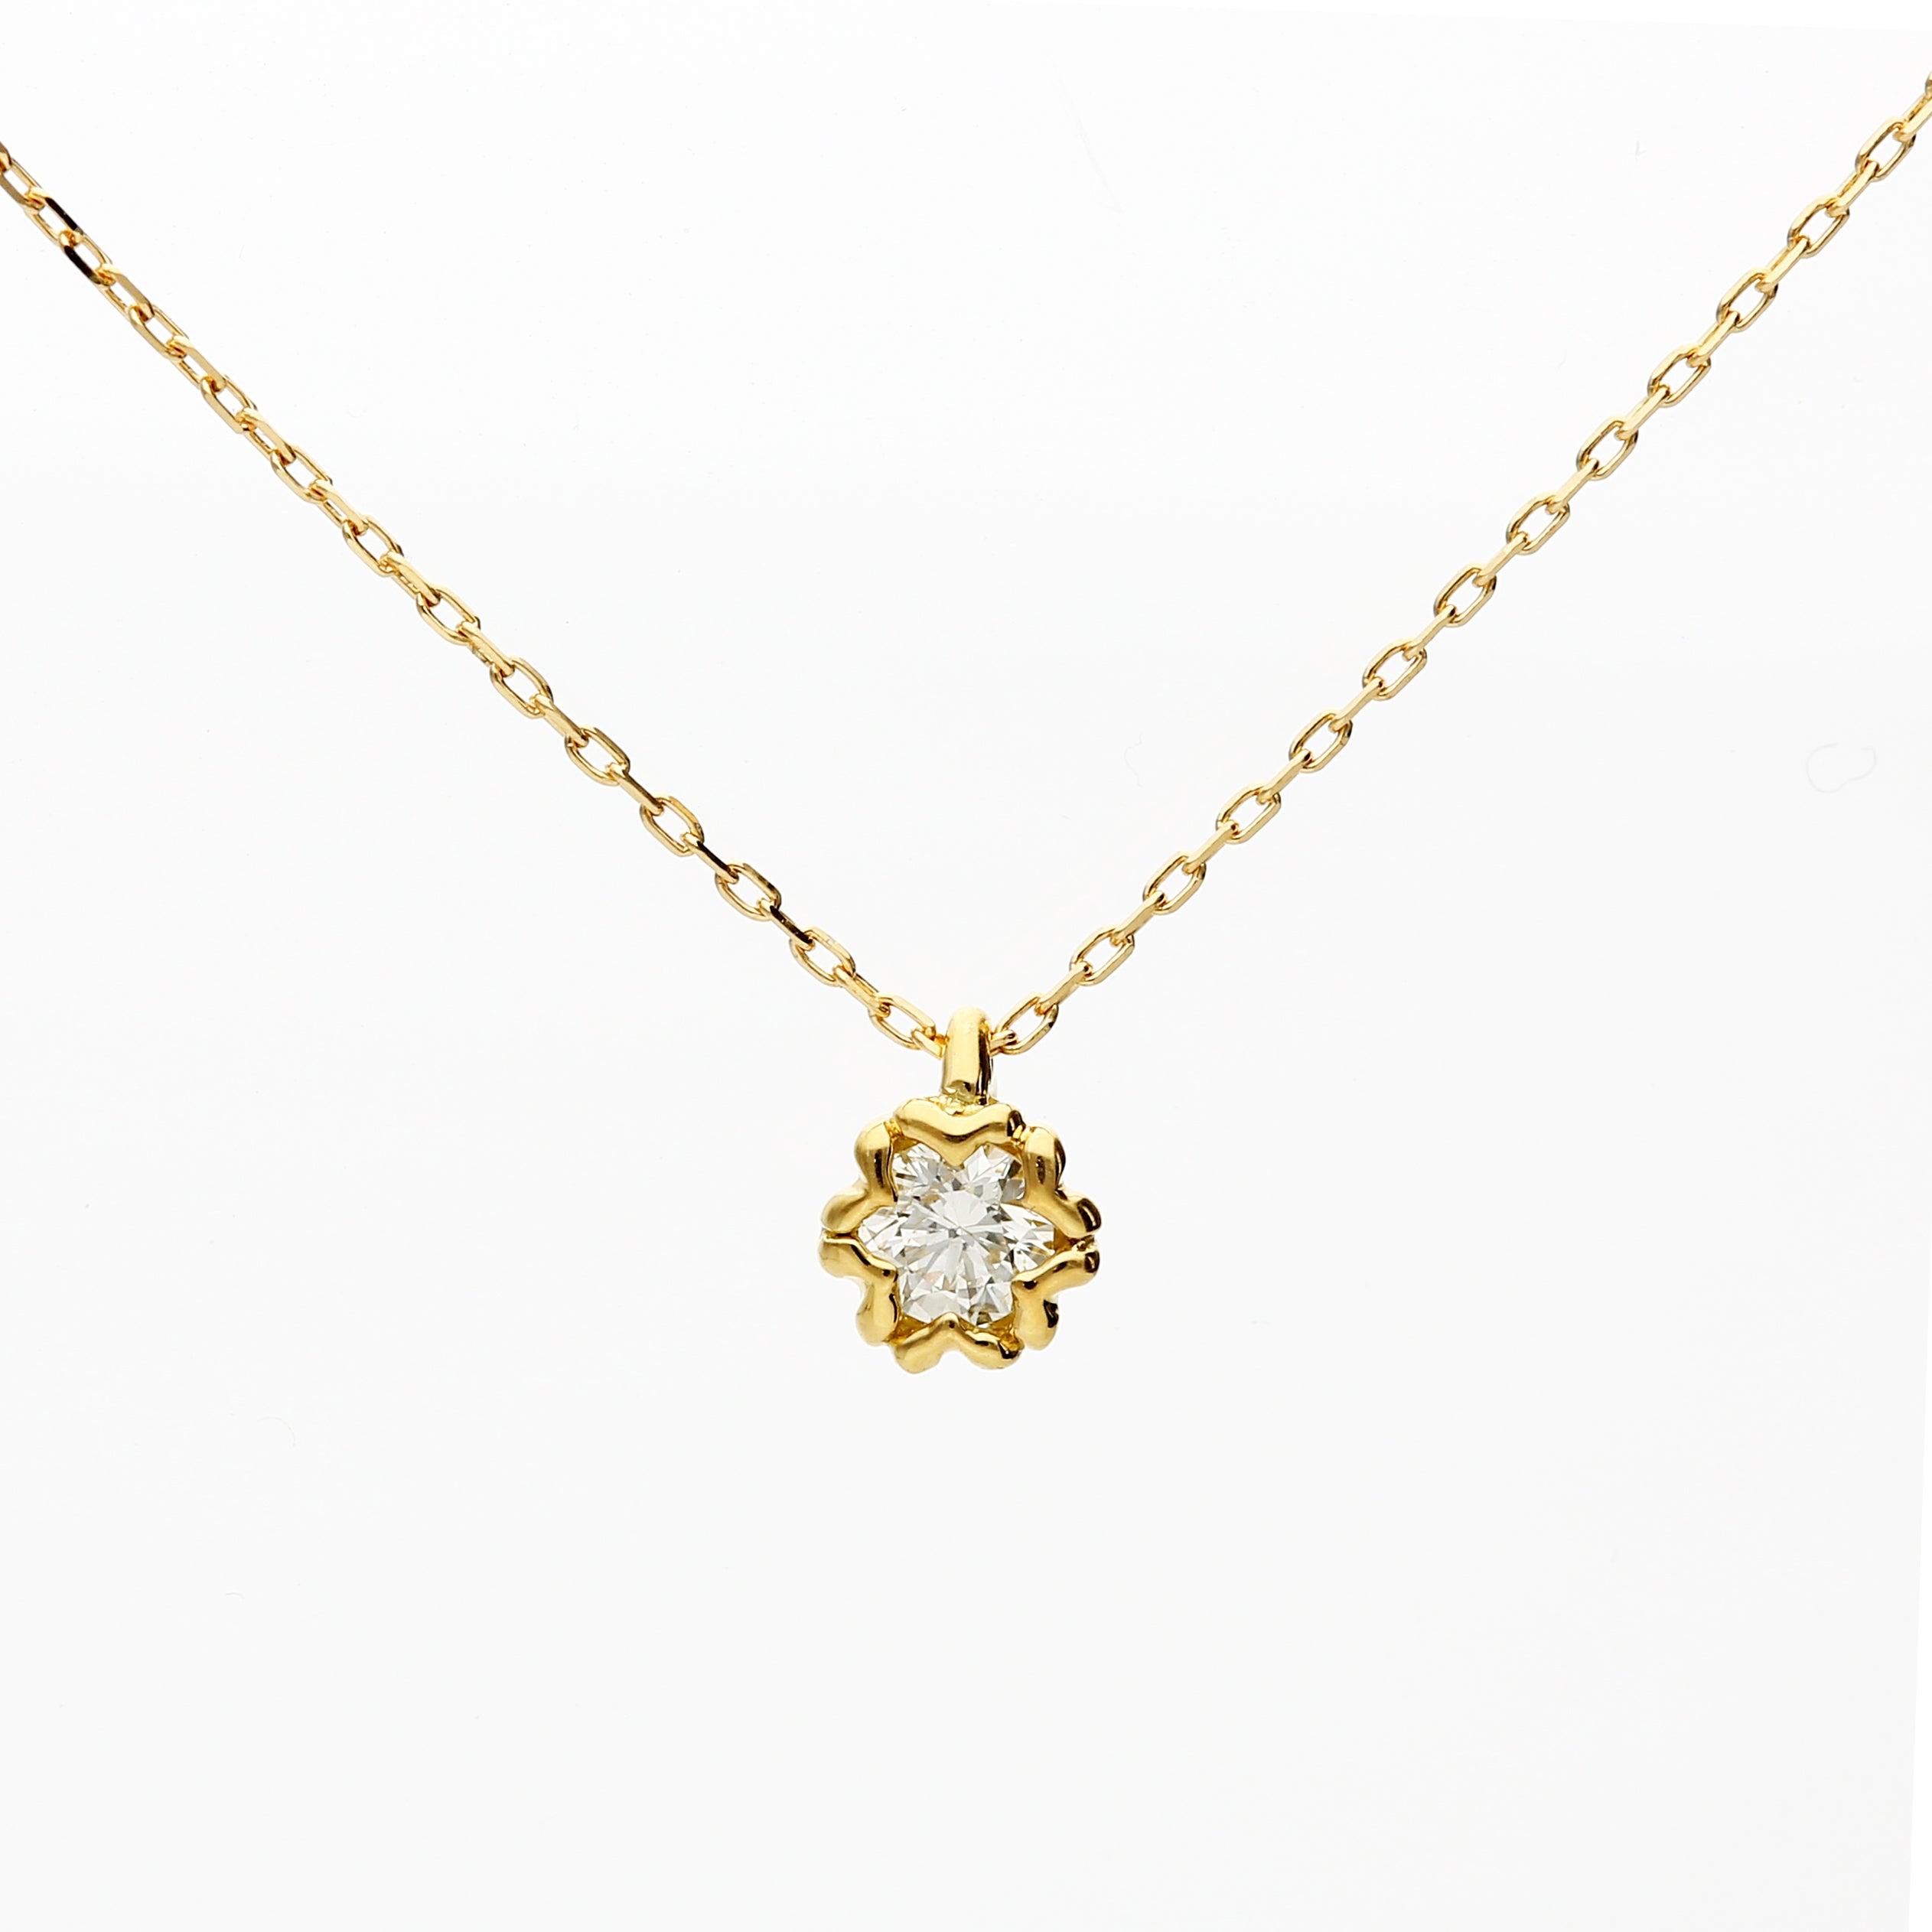 NEW ARRIVAL❗️ K18 JAPAN GOLD NECKLACE & BRACELET • 18 karat Japan gold •  50.7 g (necklace)/ 30.5 g (bracelet) • 16 in (neckla... | Instagram